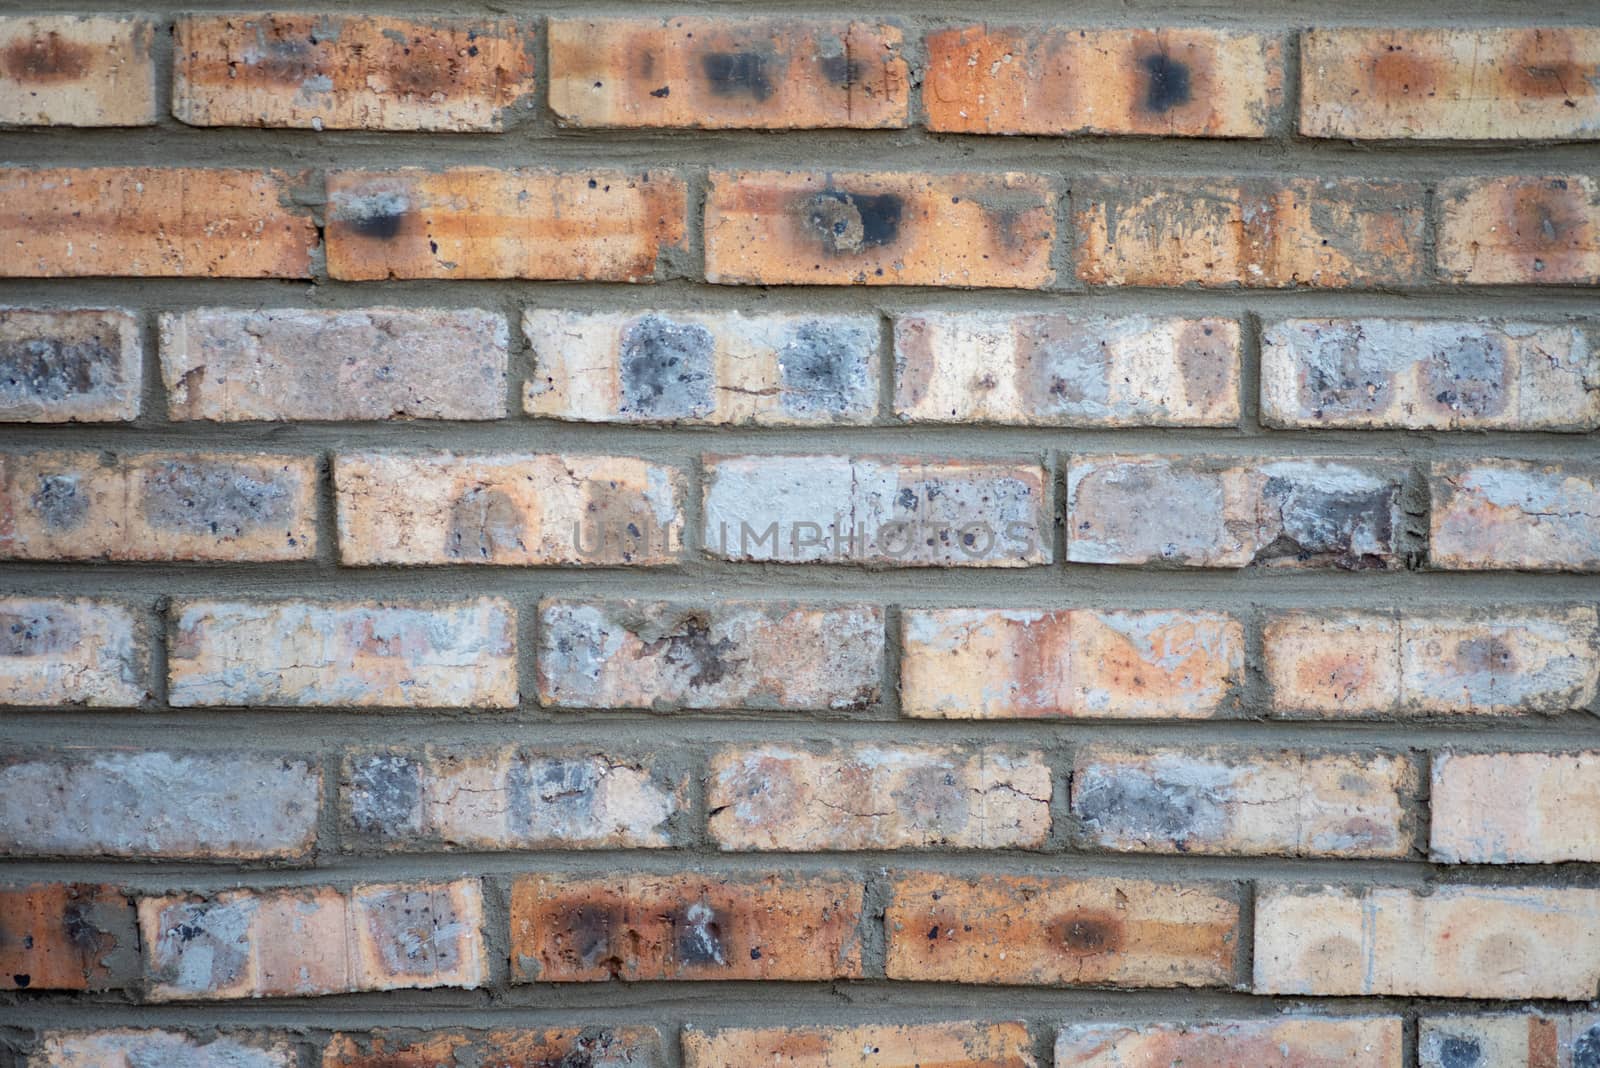 Bricks forming pattern on wall shot up close